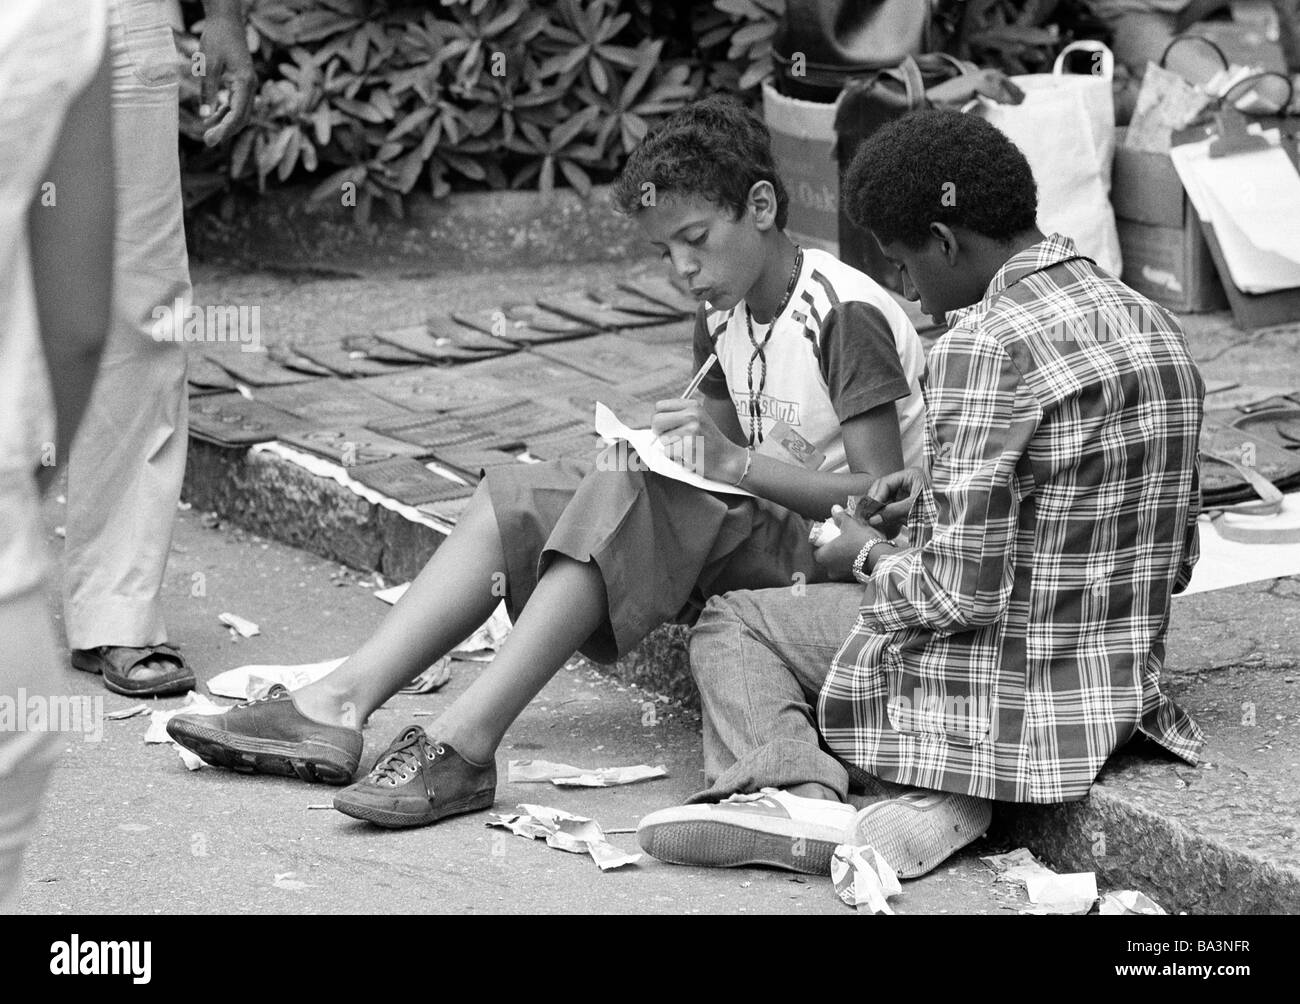 Negli anni settanta, foto in bianco e nero, persone, due ragazzi seduti al ciglio della strada, per il tempo libero, teeshirt, magliette, pantaloni, gomme, mulattos, di età compresa tra 14 a 18 anni, Brasile, Minas Gerais, Belo Horizonte Foto Stock